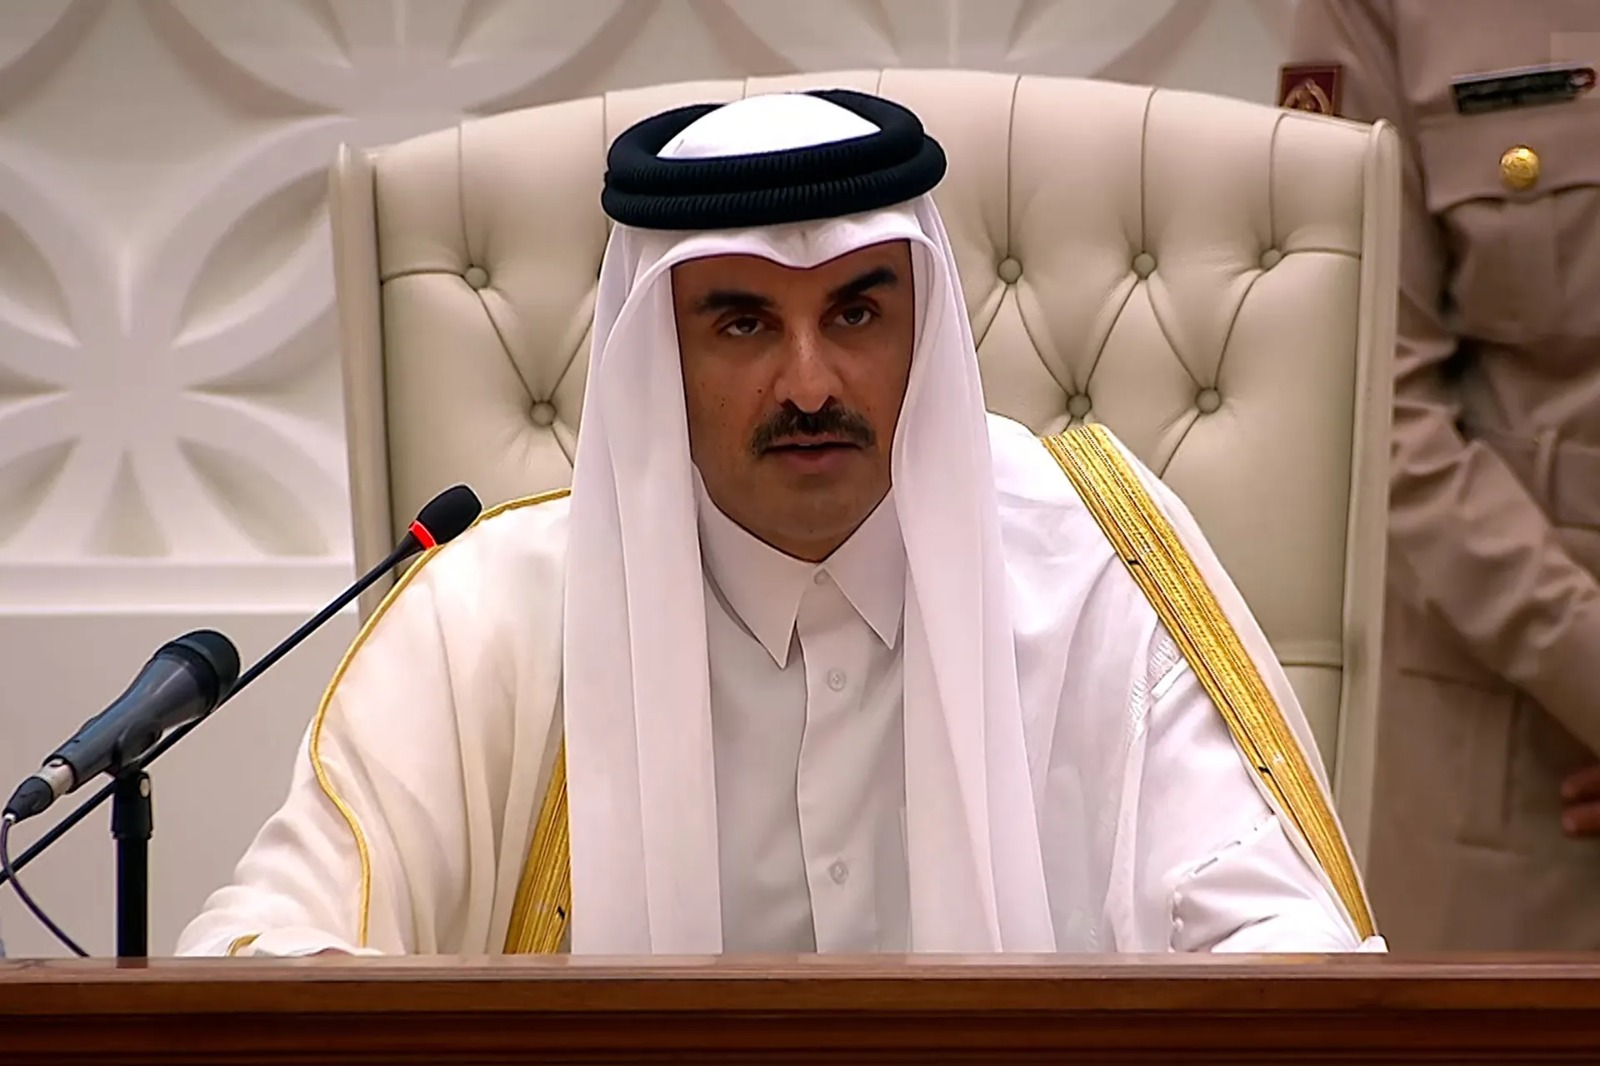 أمير قطر: نسعى لإنهاء الحرب في غزة من خلال التفاوض